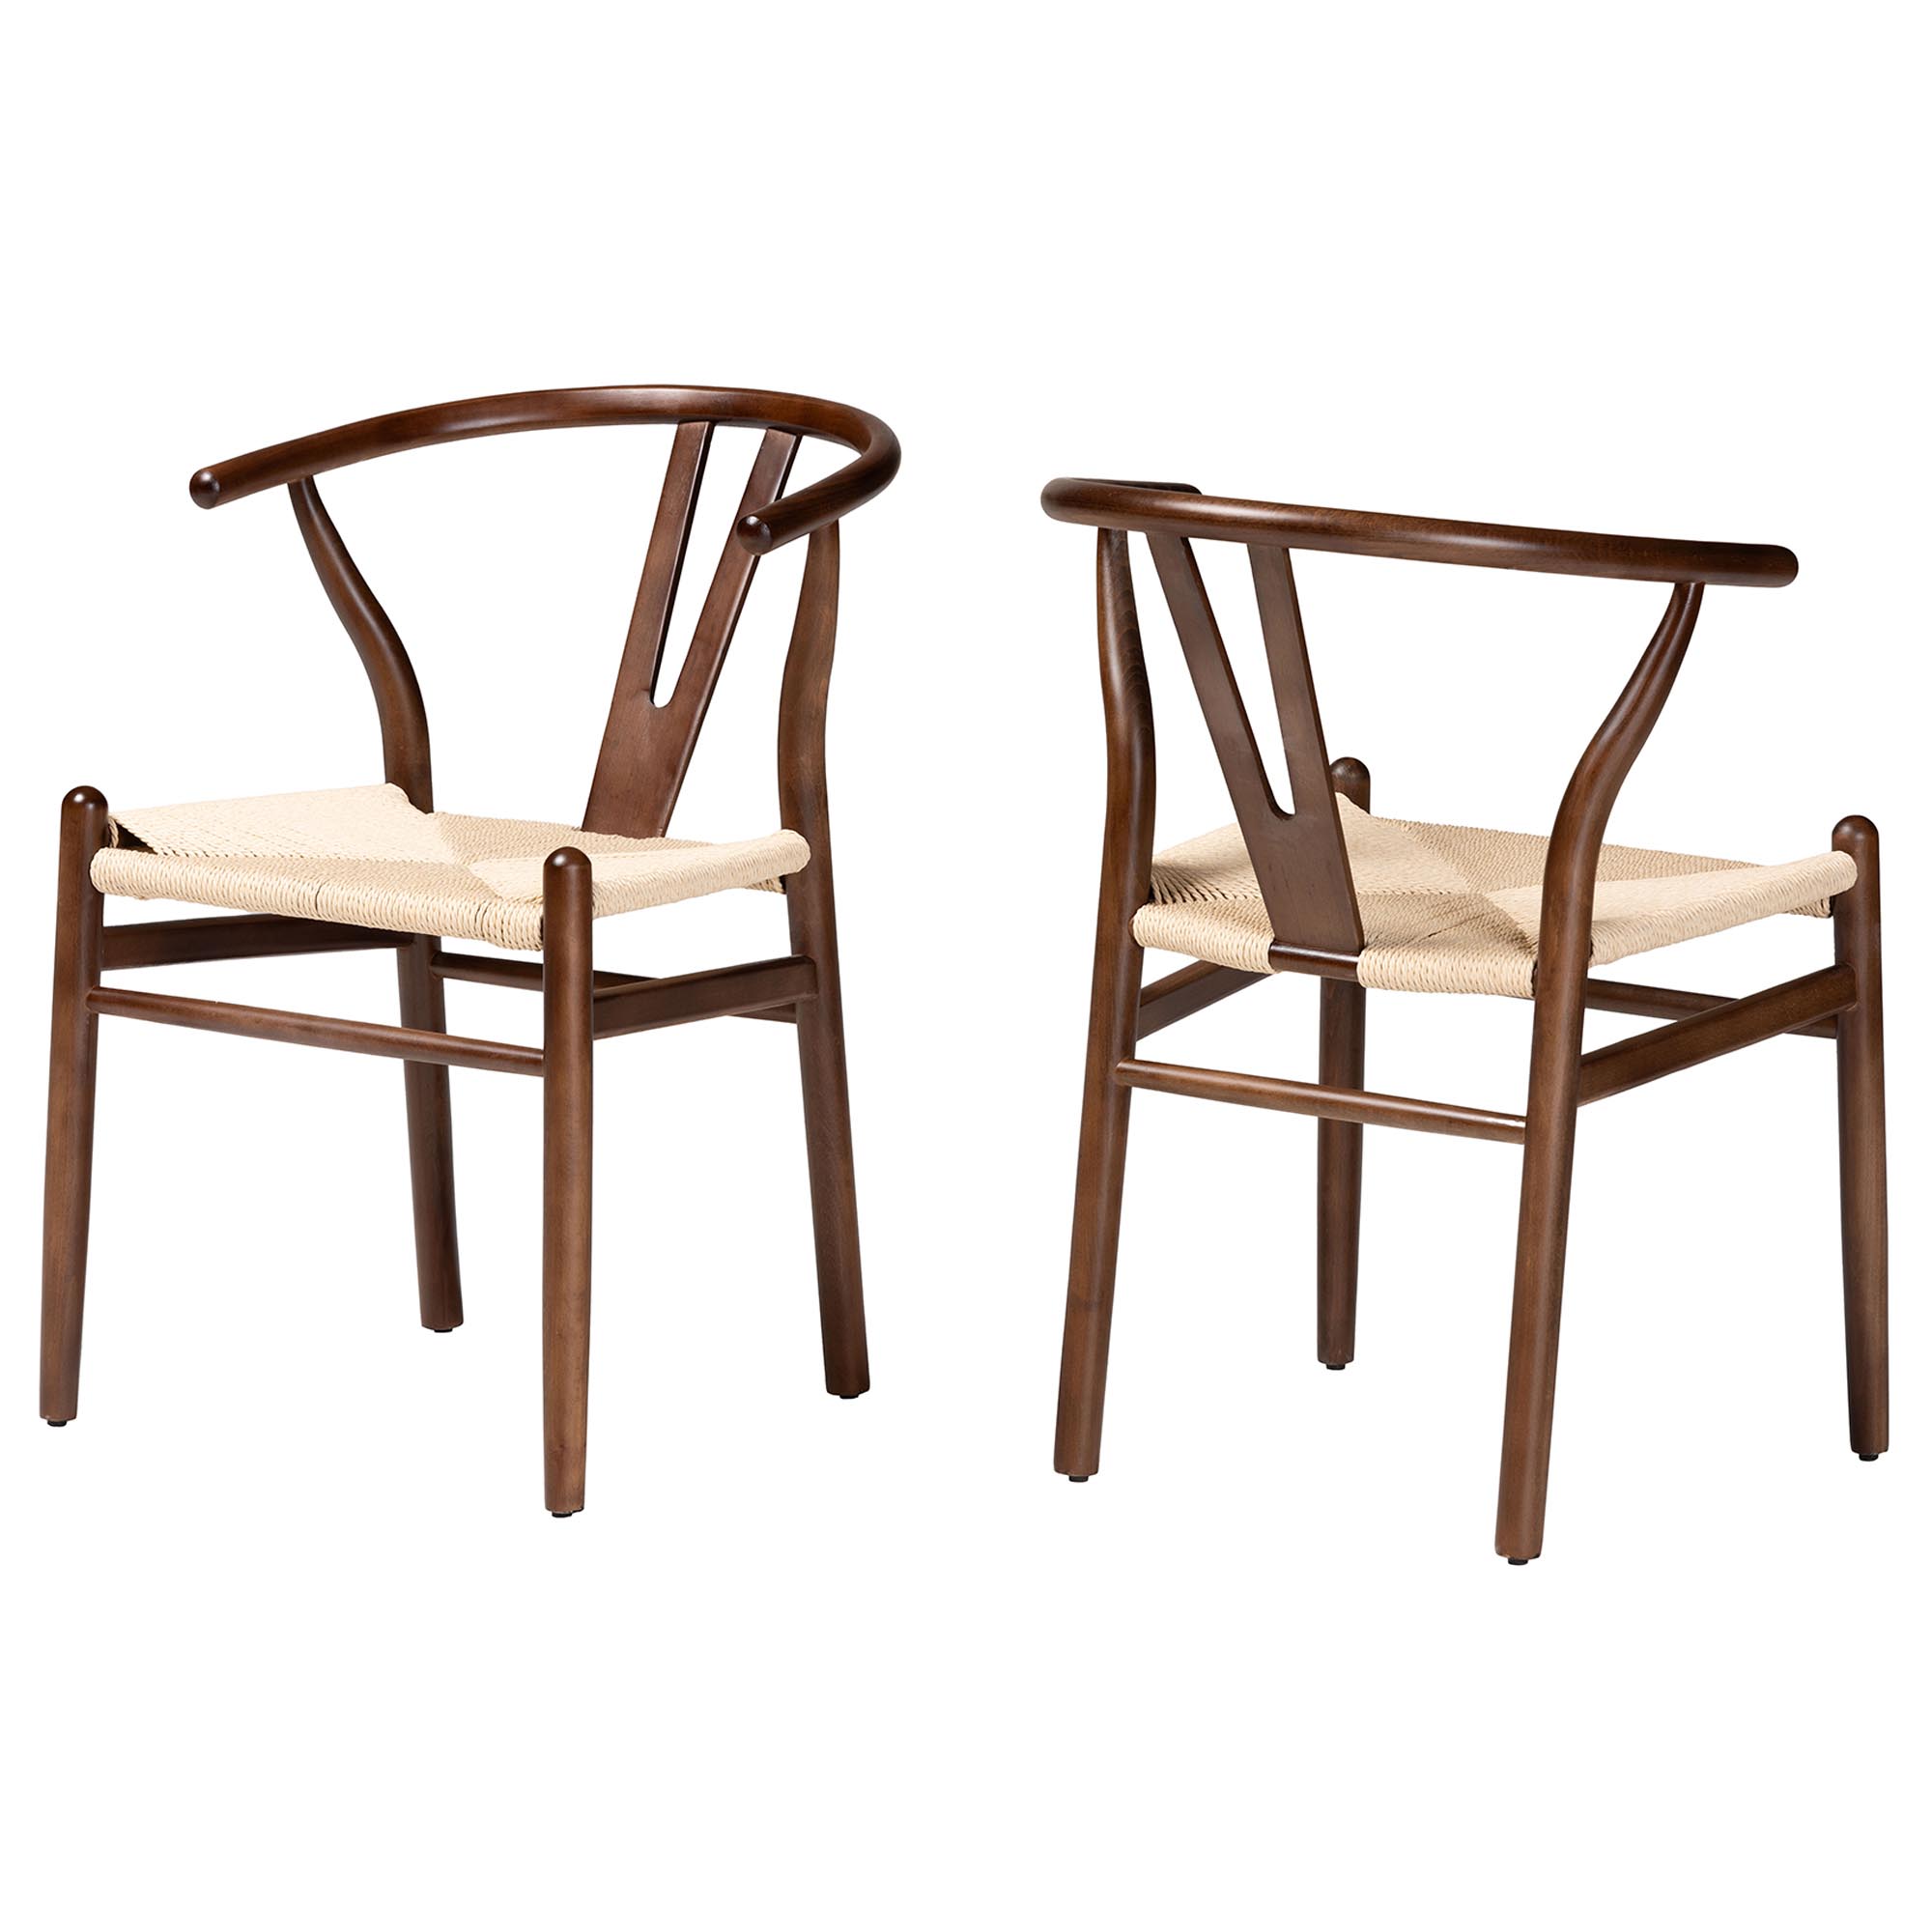 Baxton Studio Paxton Modern Dark Brown Finished Wood 2-Piece Dining Chair Set